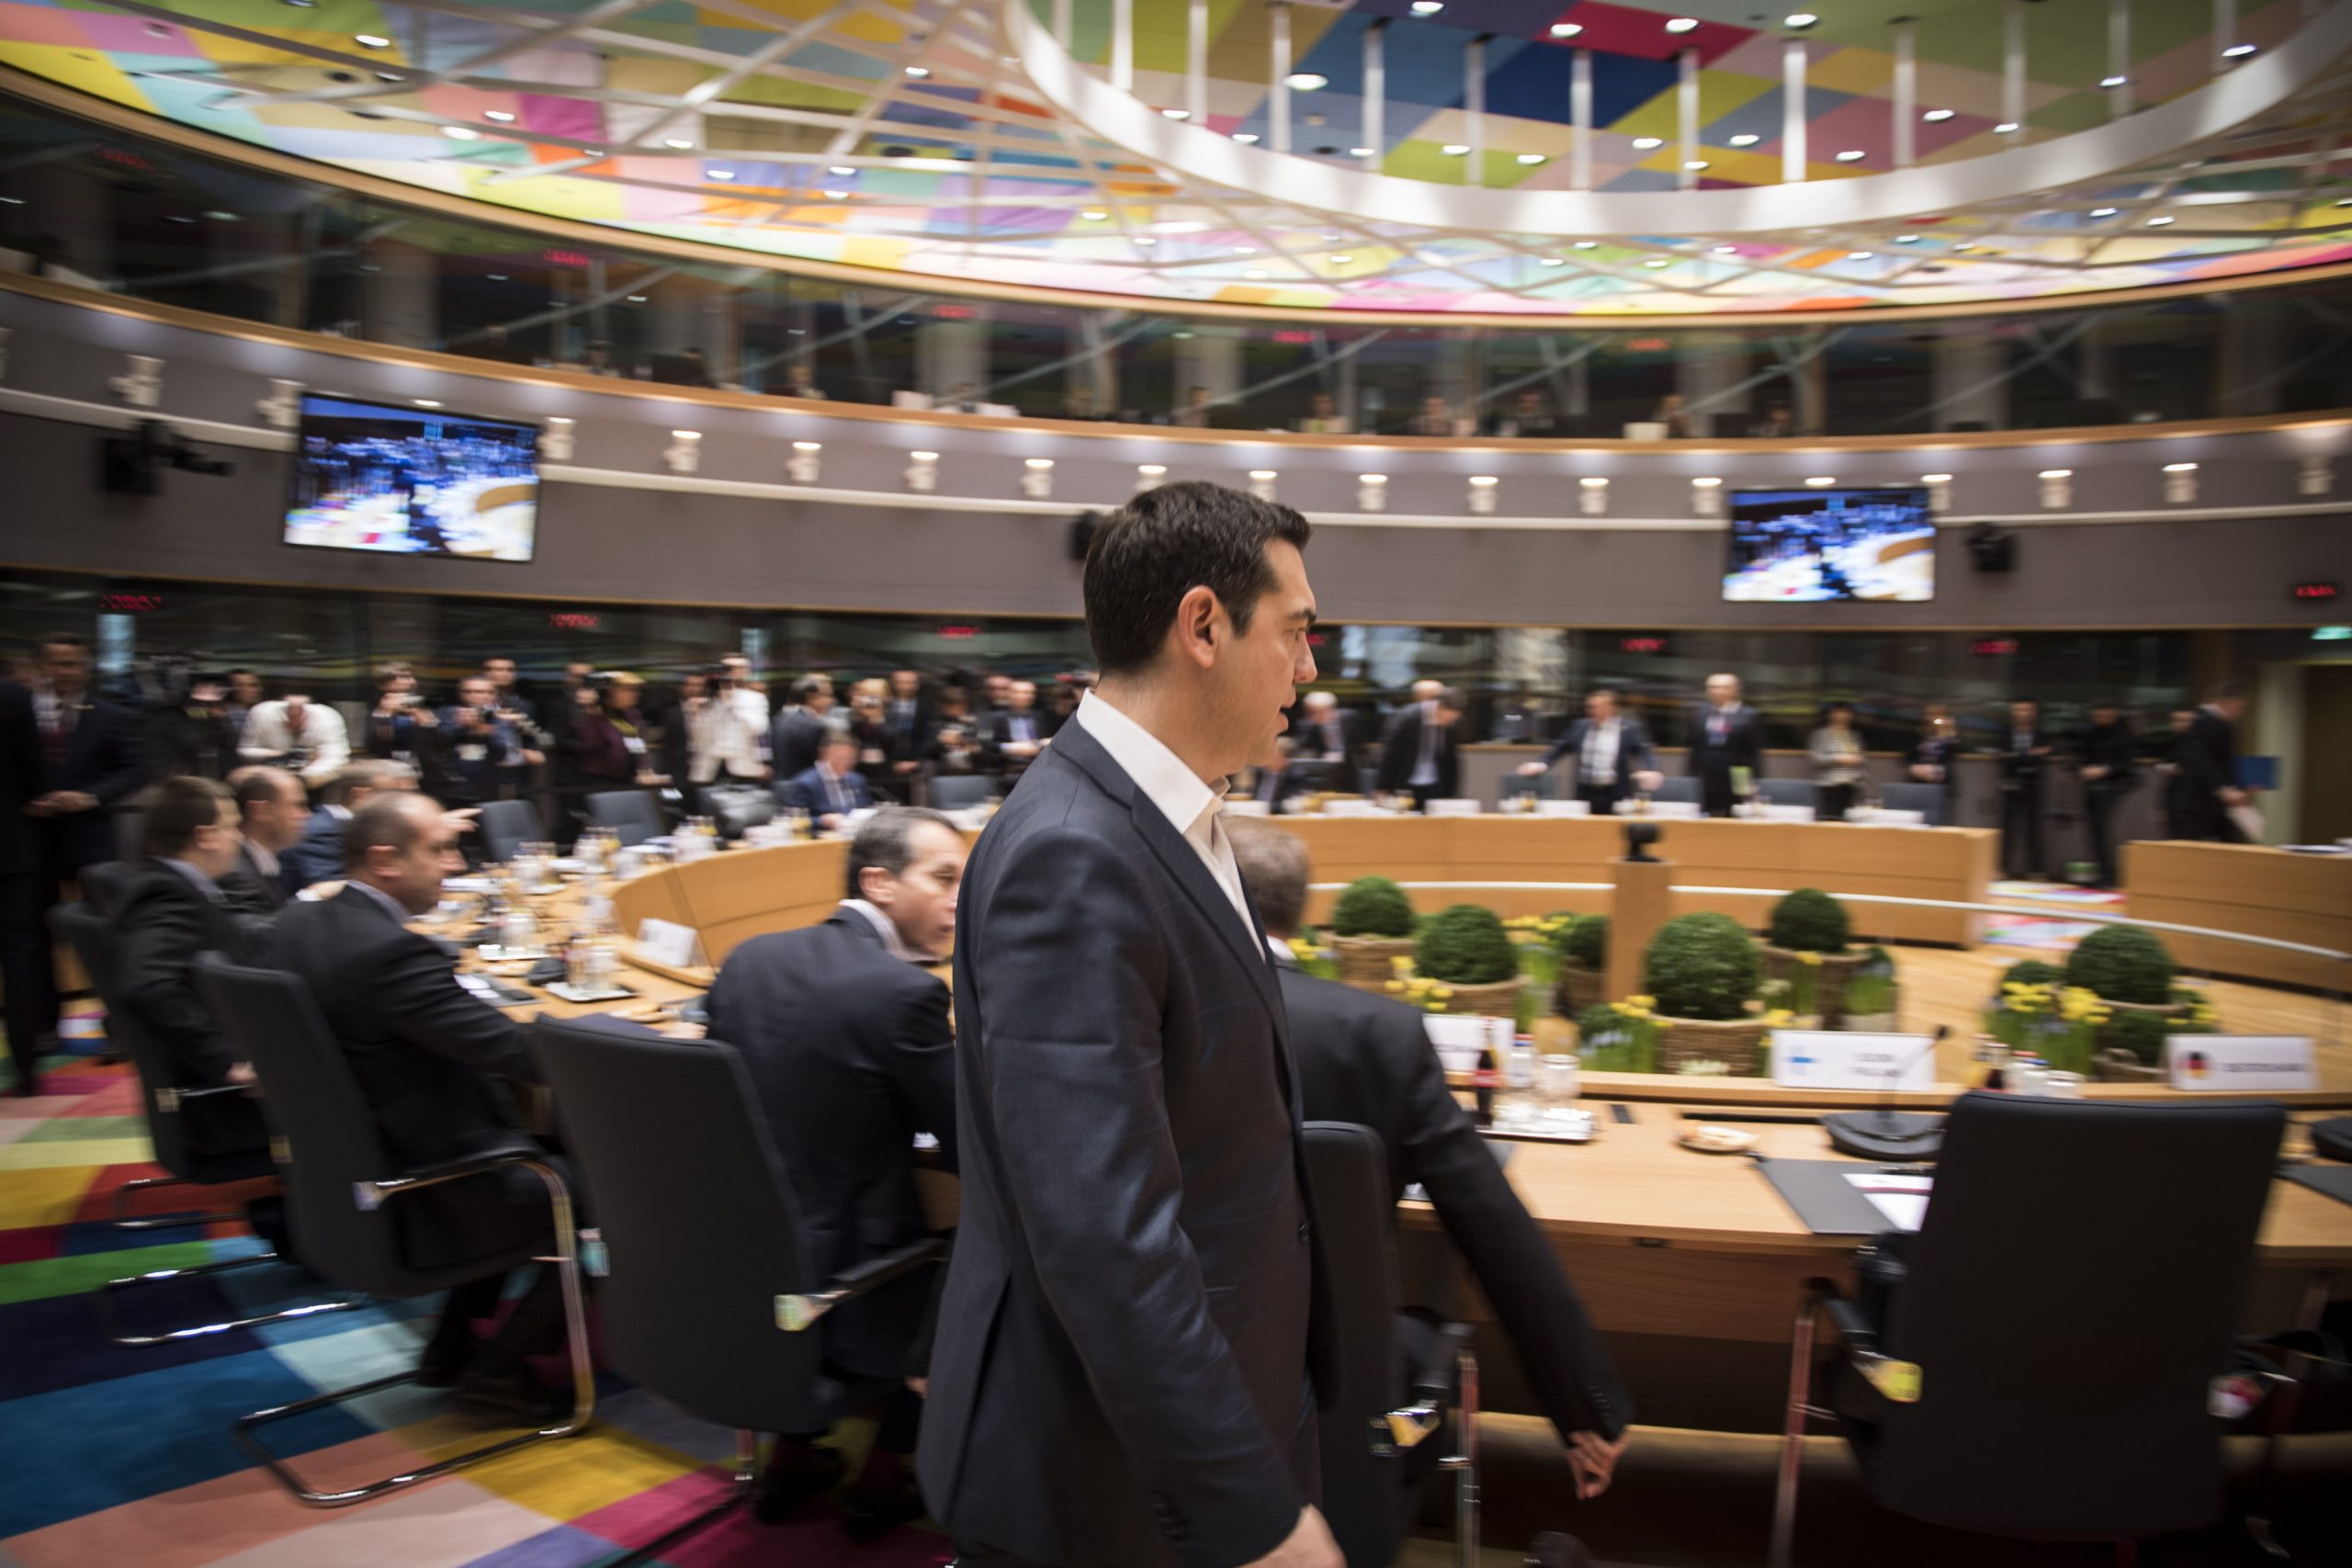 Σύνοδος Κορυφής της ΕΕ: Ελλάδα & Κύπρος περιμένουν από τις Βρυξέλλες τιμωρία της Άγκυρας αλλά… μπορούν;